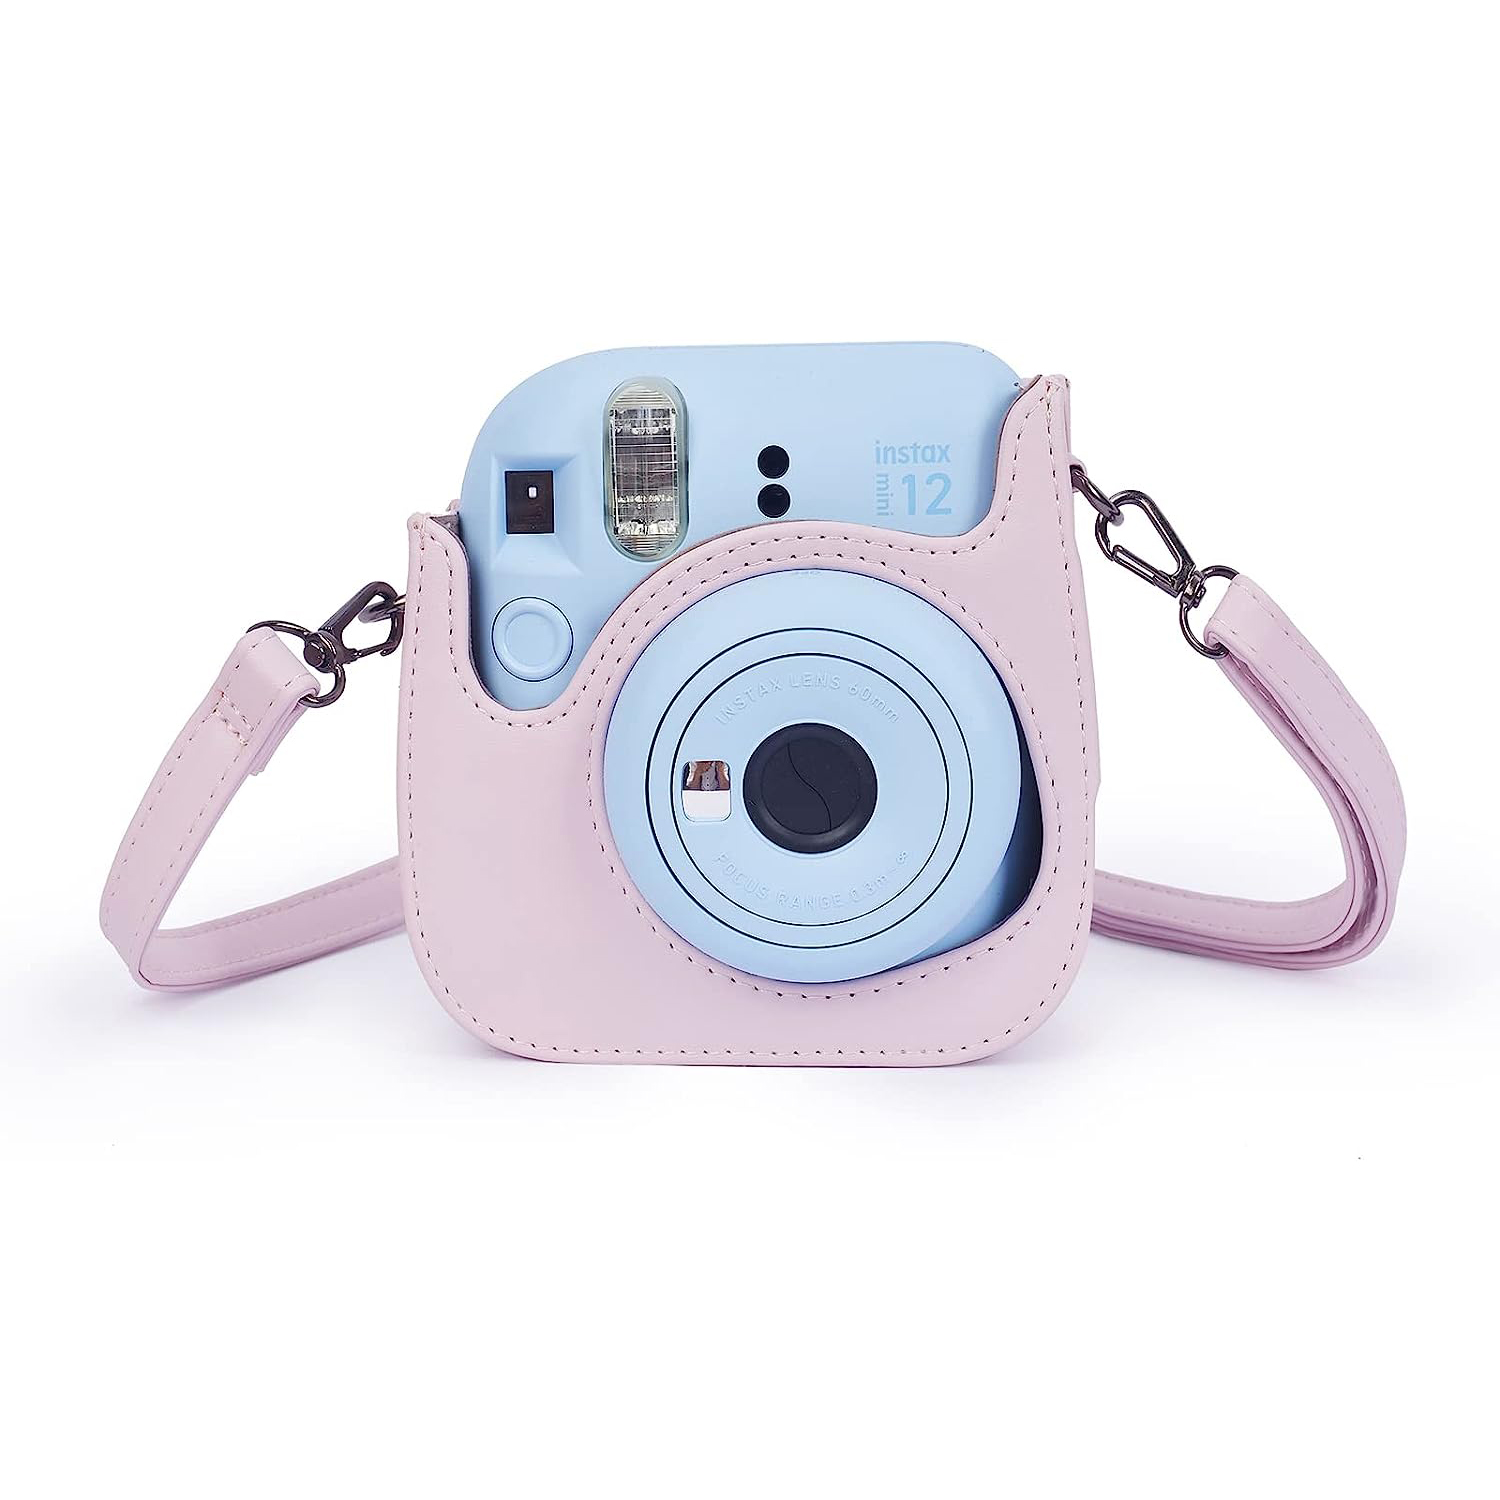 CAIYOULE Los accesorios para cámara instantánea Fujifilm Instax Mini 12  incluyen funda de piel sintética para Instax 12 + mini álbum de fotos y –  Yaxa Colombia